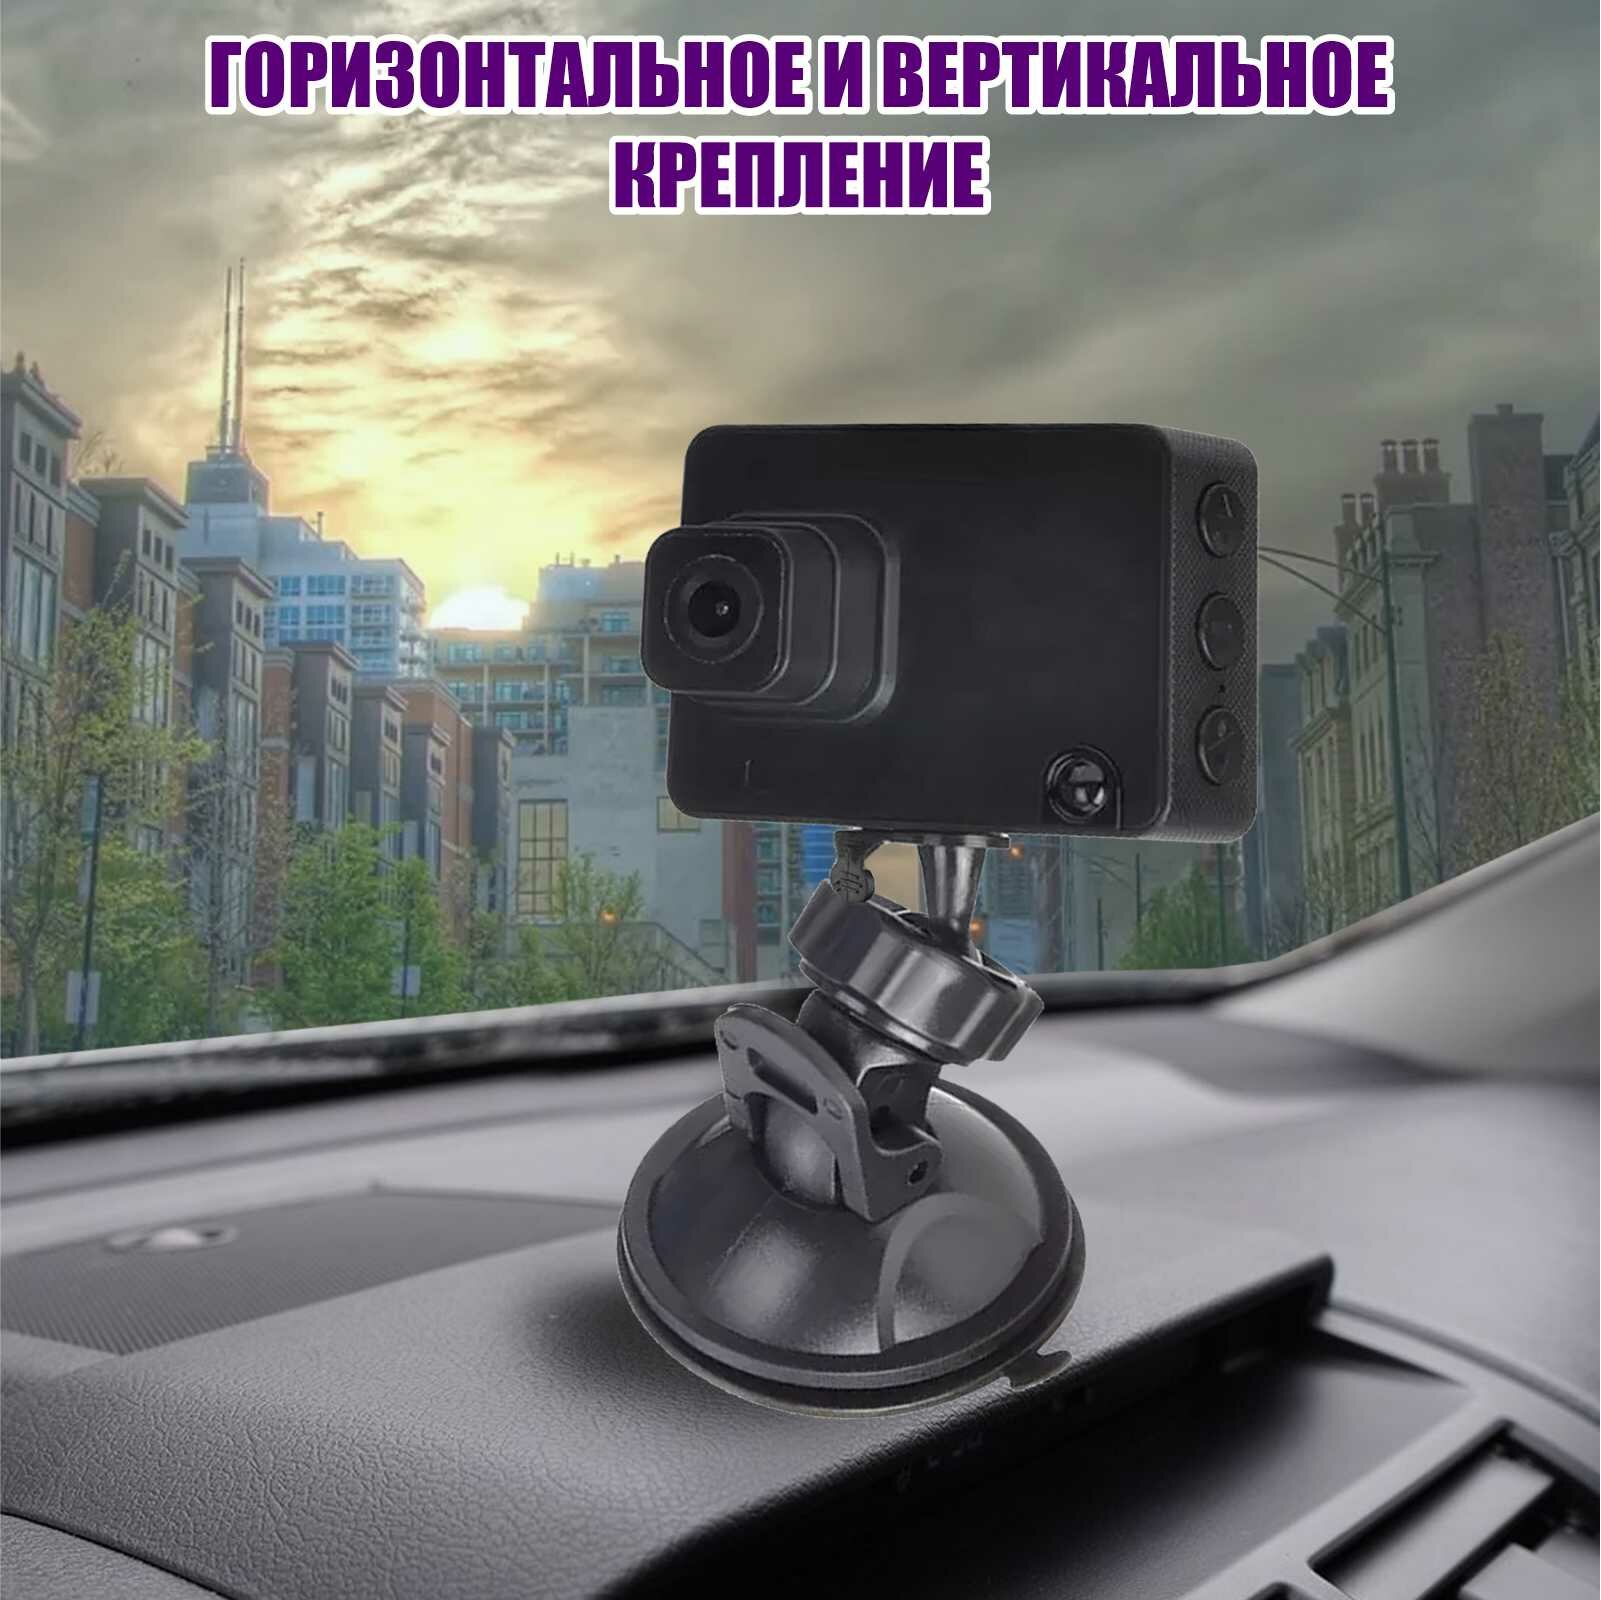 Держатель ADV-1107 для видеорегистратора на присоске в авто